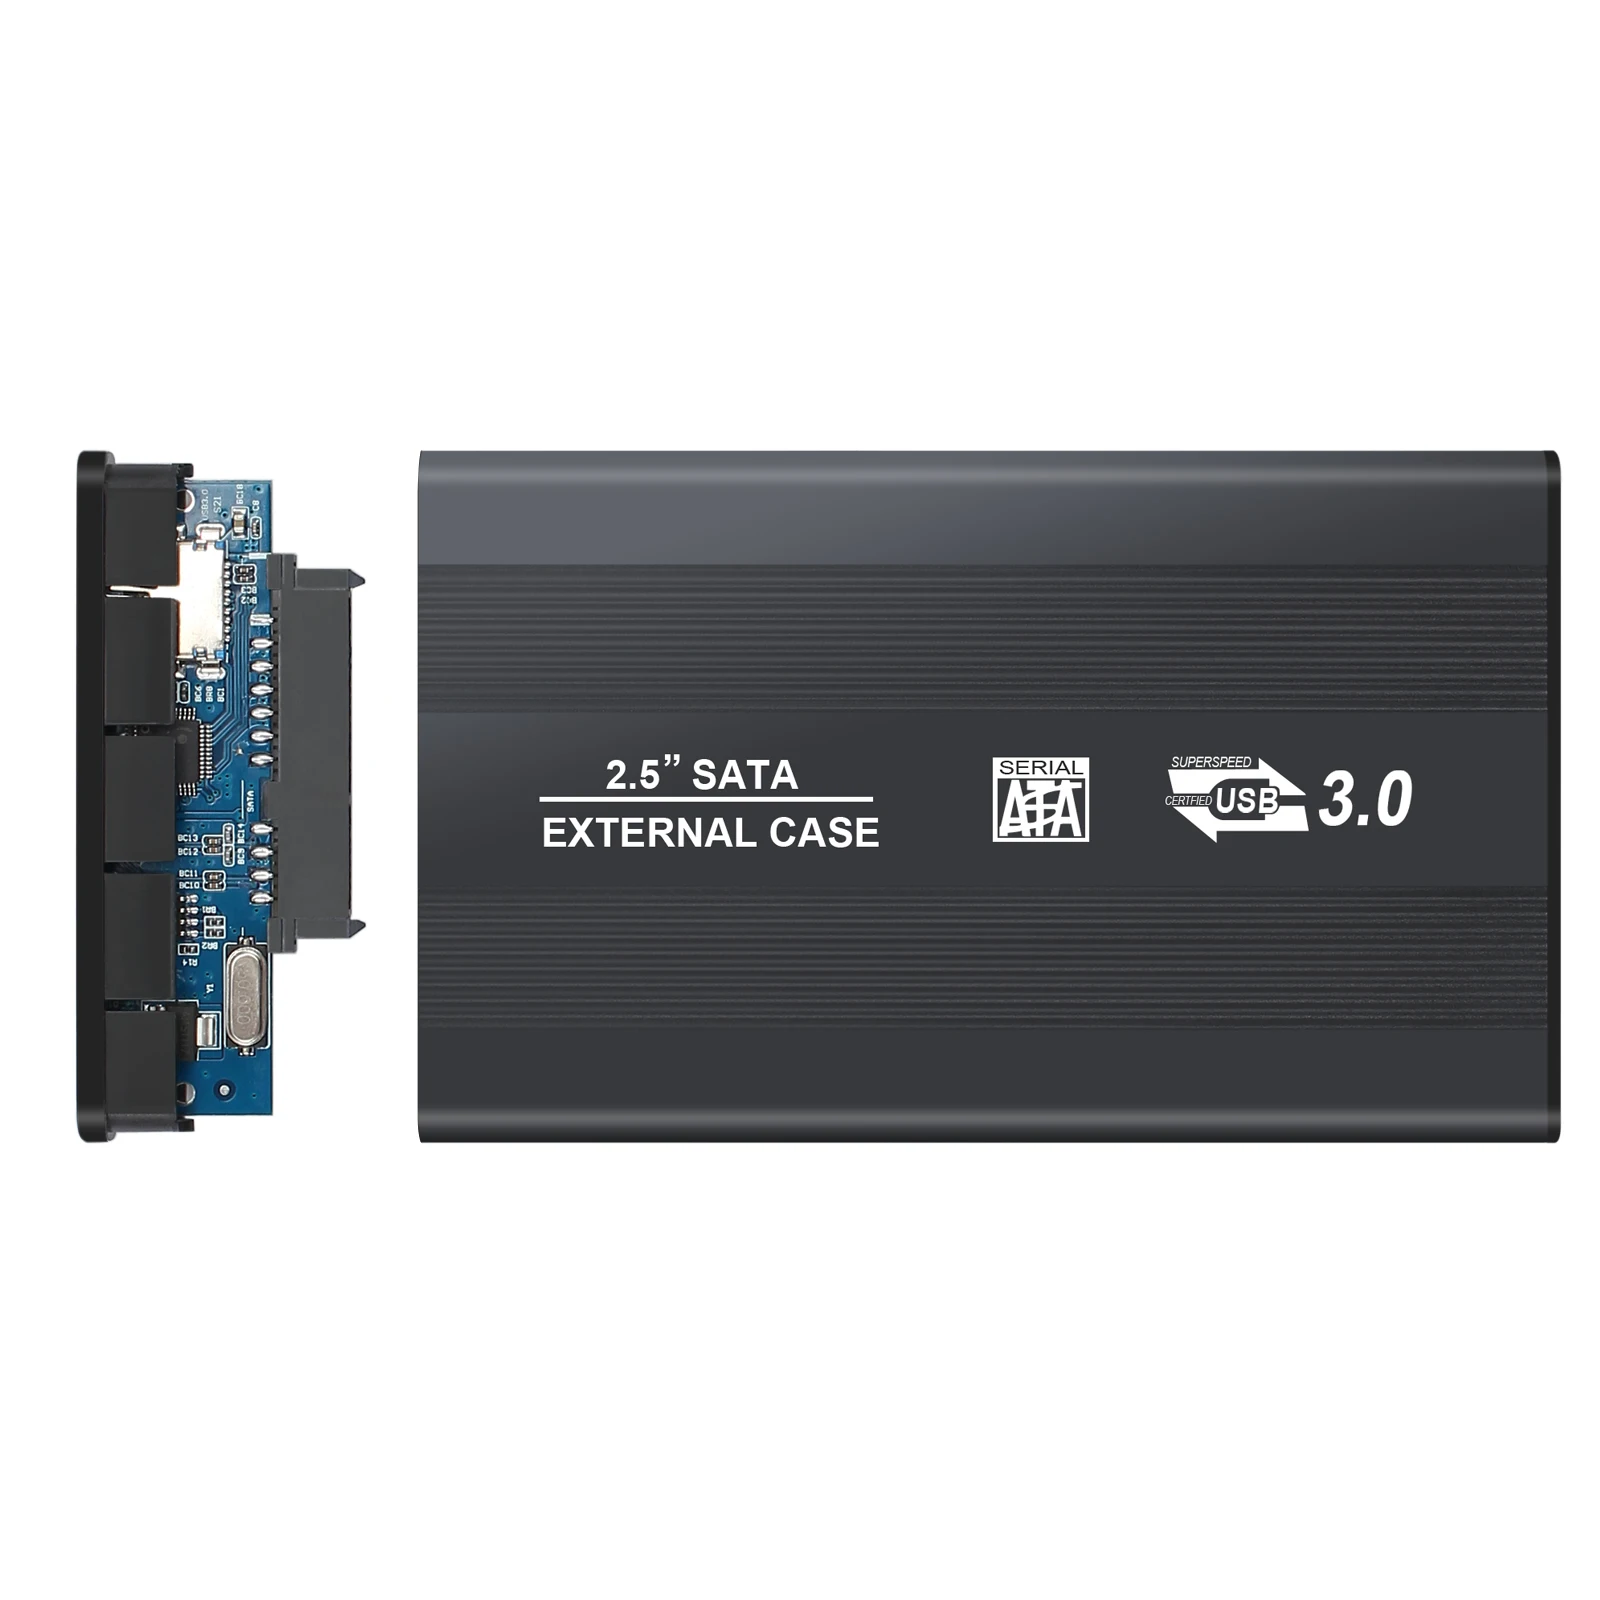 ESYNiC USB 3,0 внешний жесткий диск 2," SATA HDD SSD Корпус чехол Caddy черный алюминиевый корпус до 5 г/локон и 2000 Гб